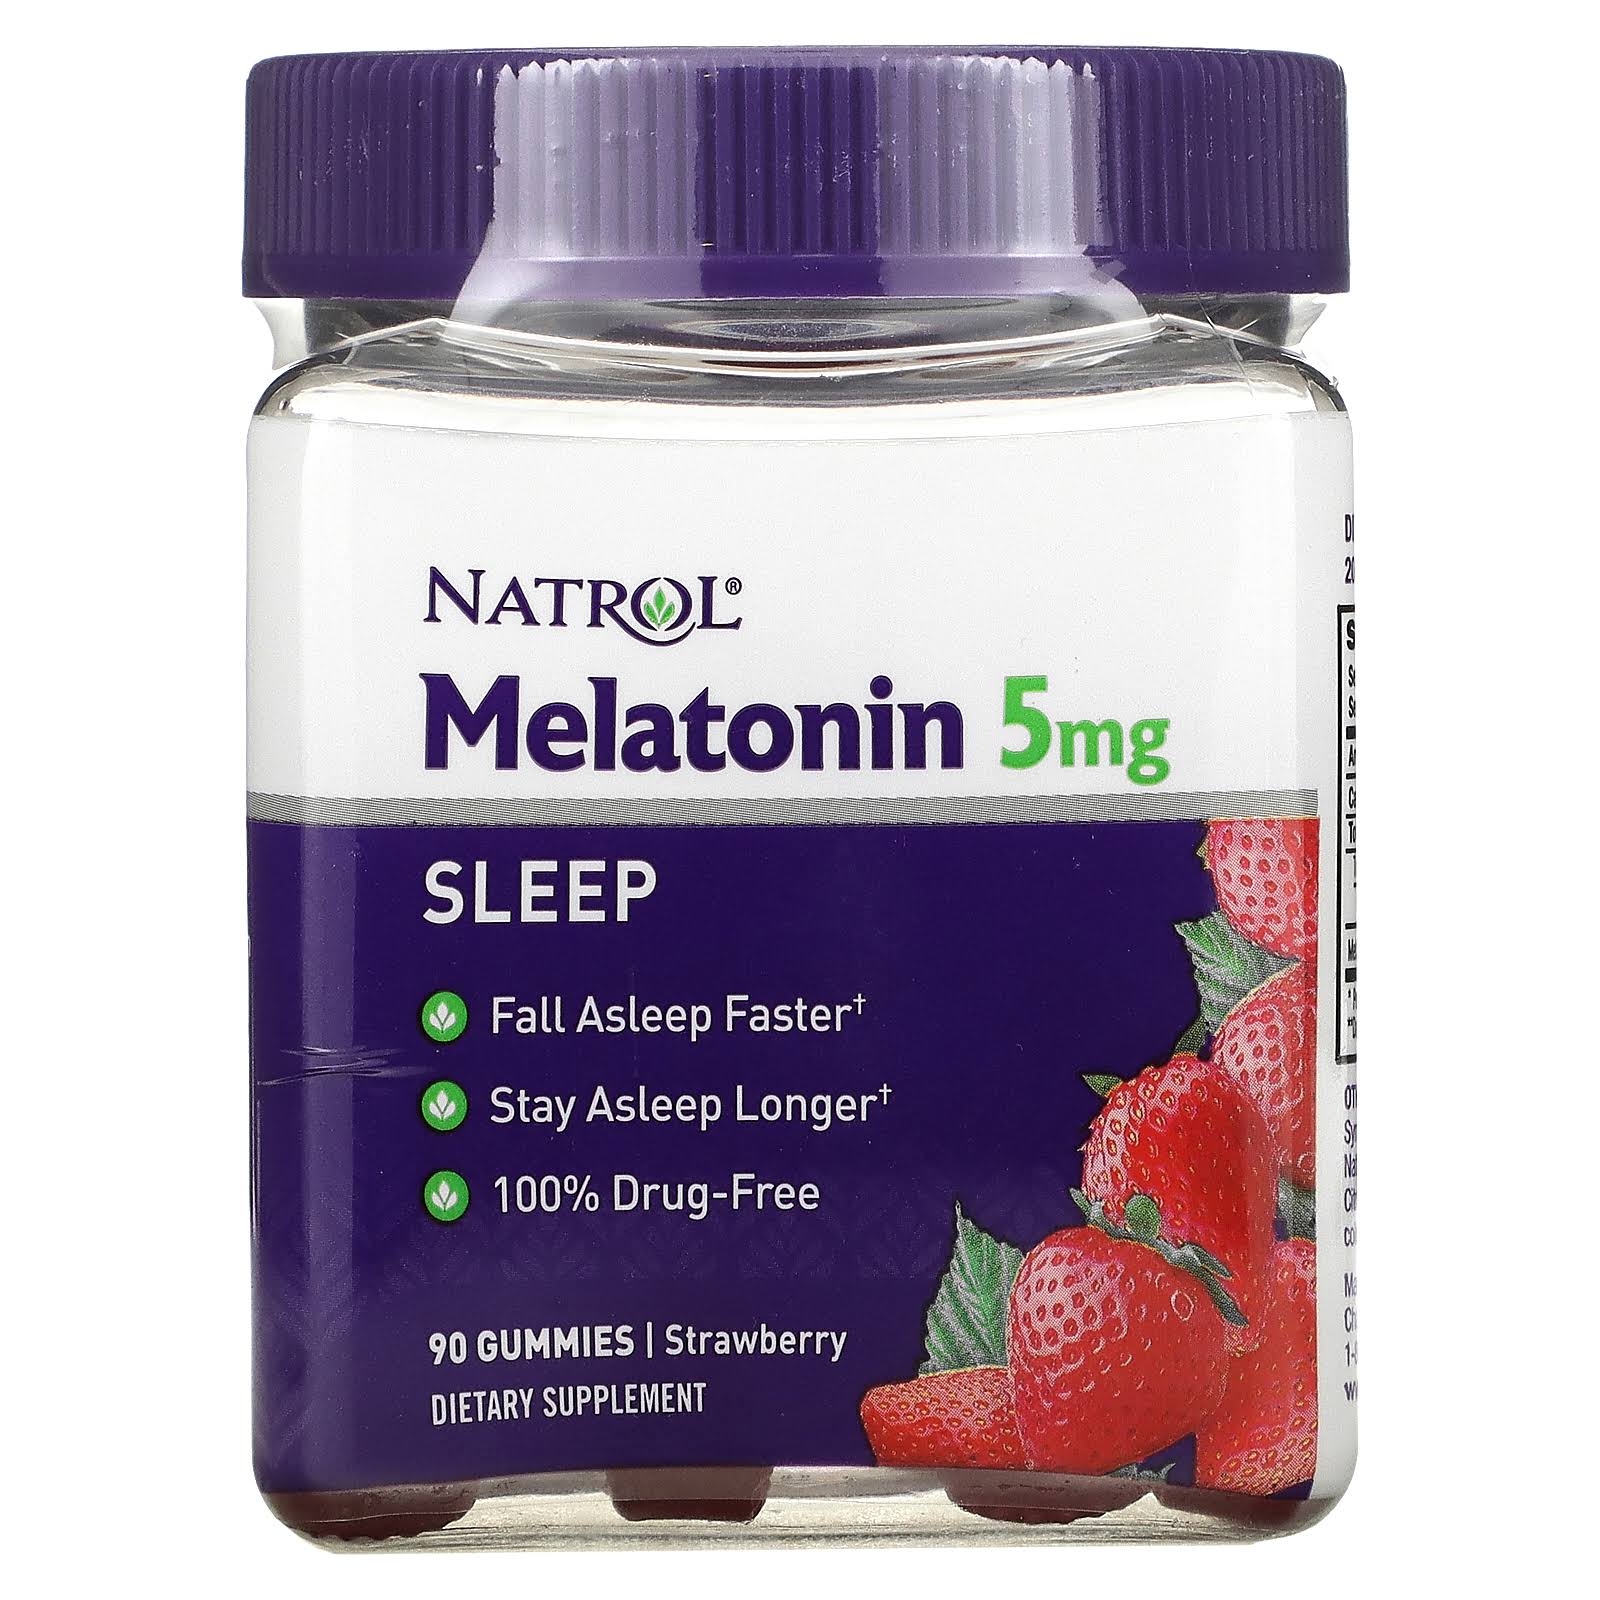 Natrol Gummies Melatonin Supplement - 90ct